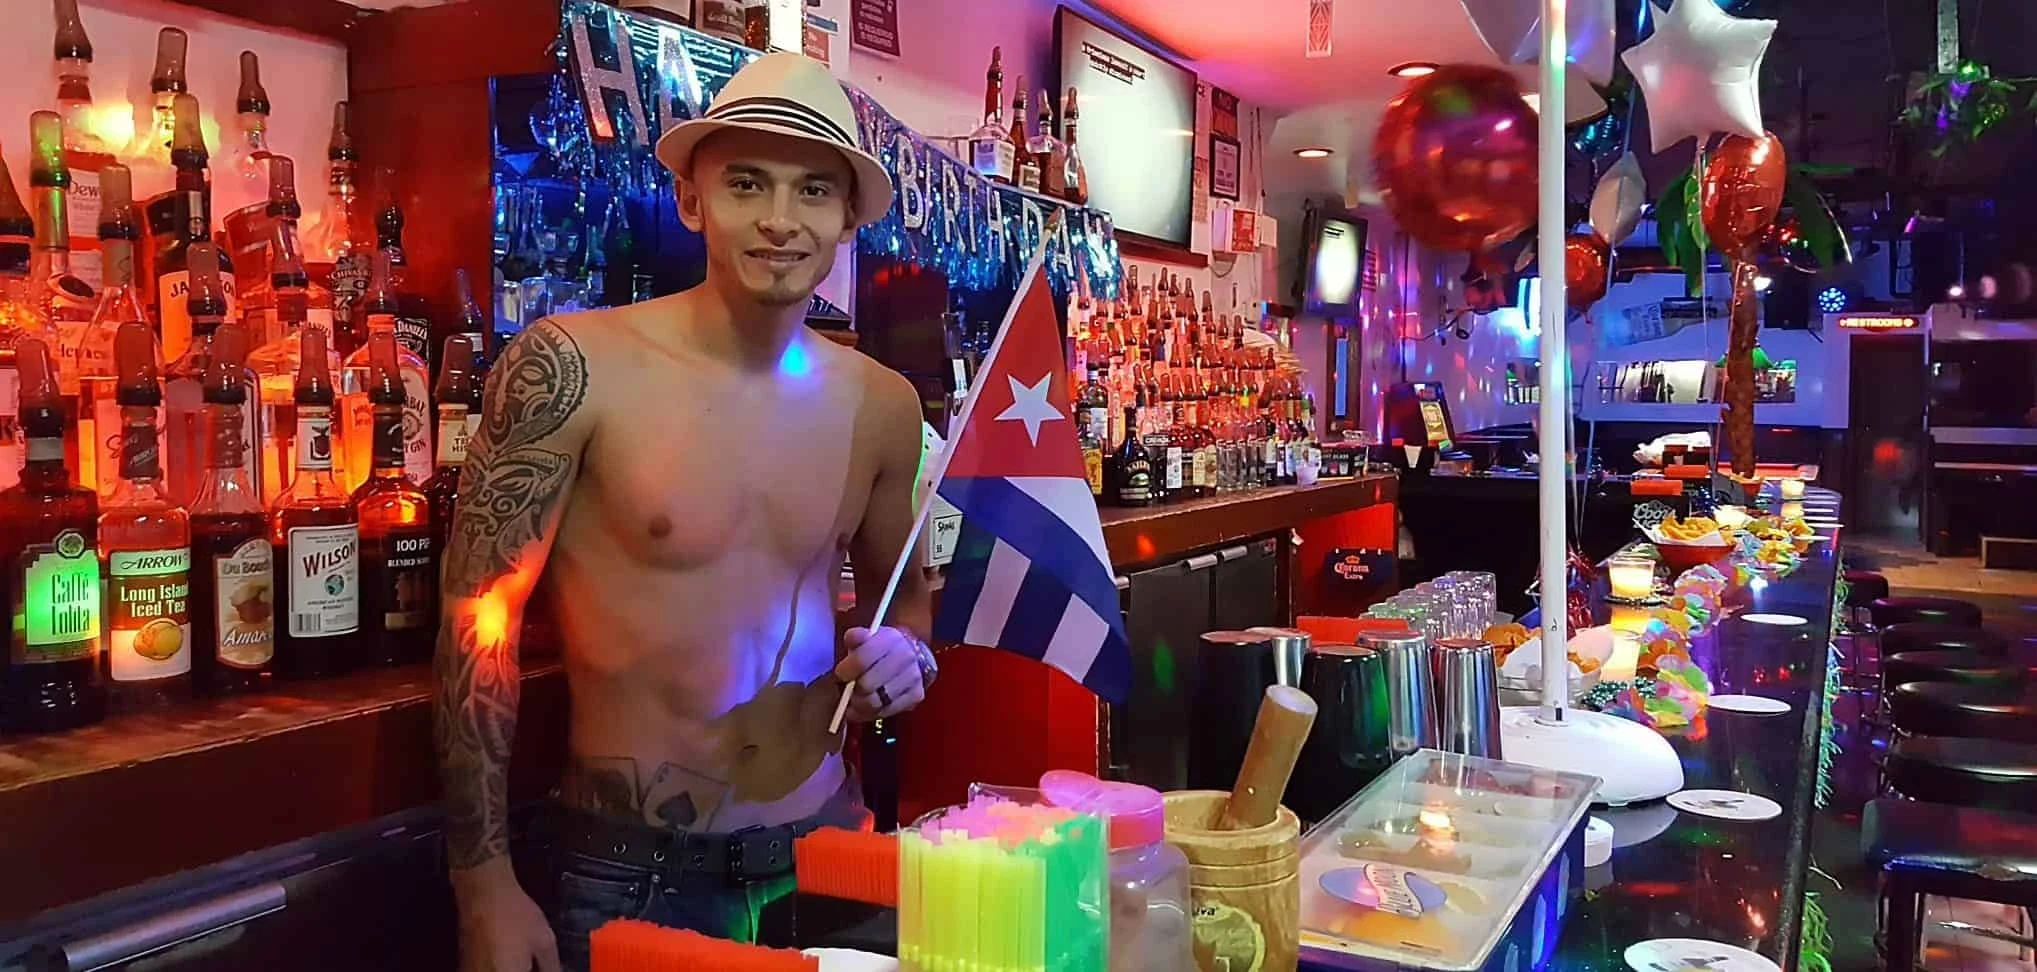 геи в баре онлайн фото 93